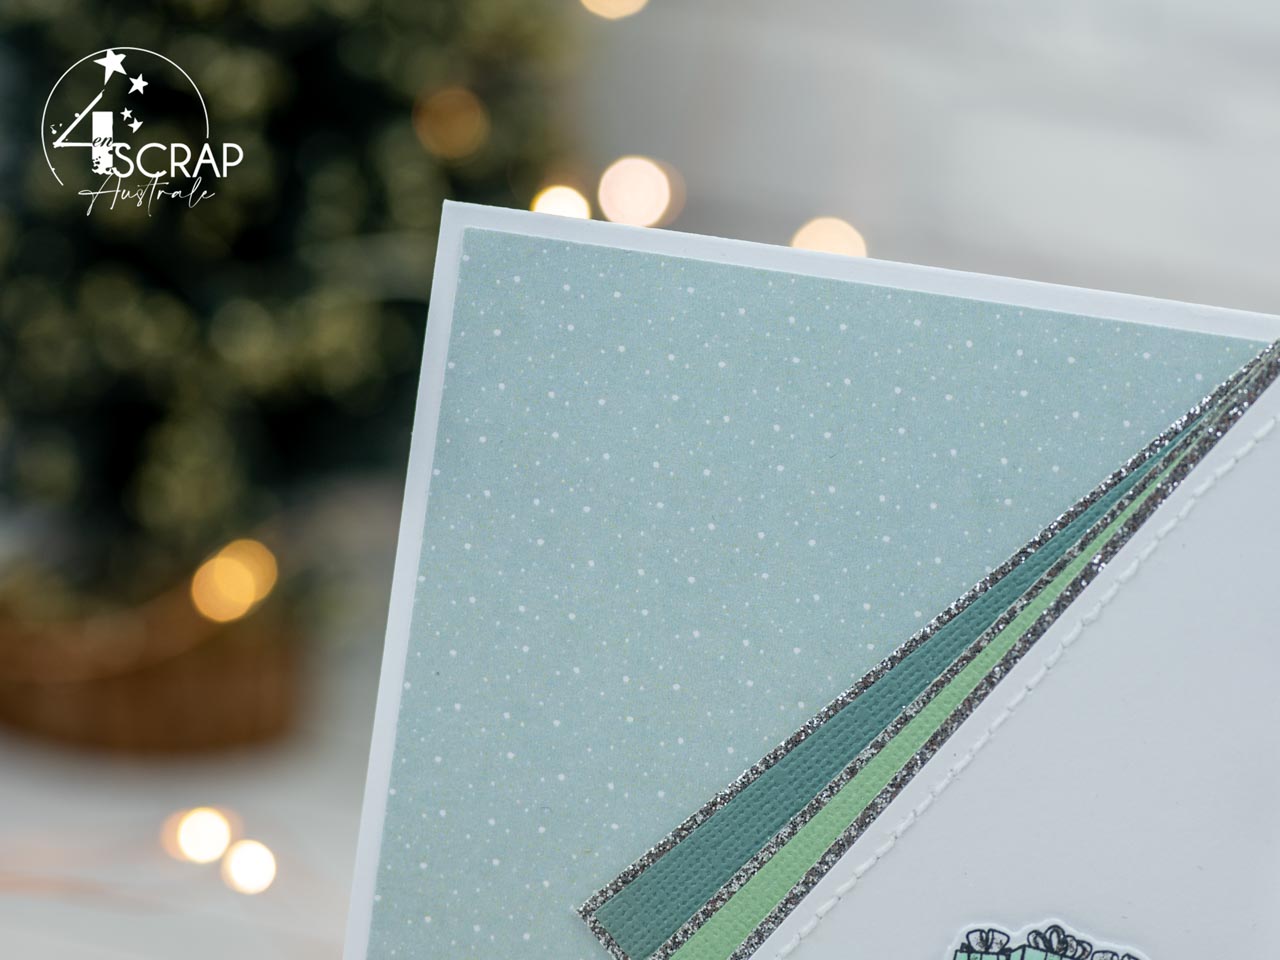 Création d'un carte de noël avec la mère Noël qui porte des cadeaux sur fond neige et effet sapin.